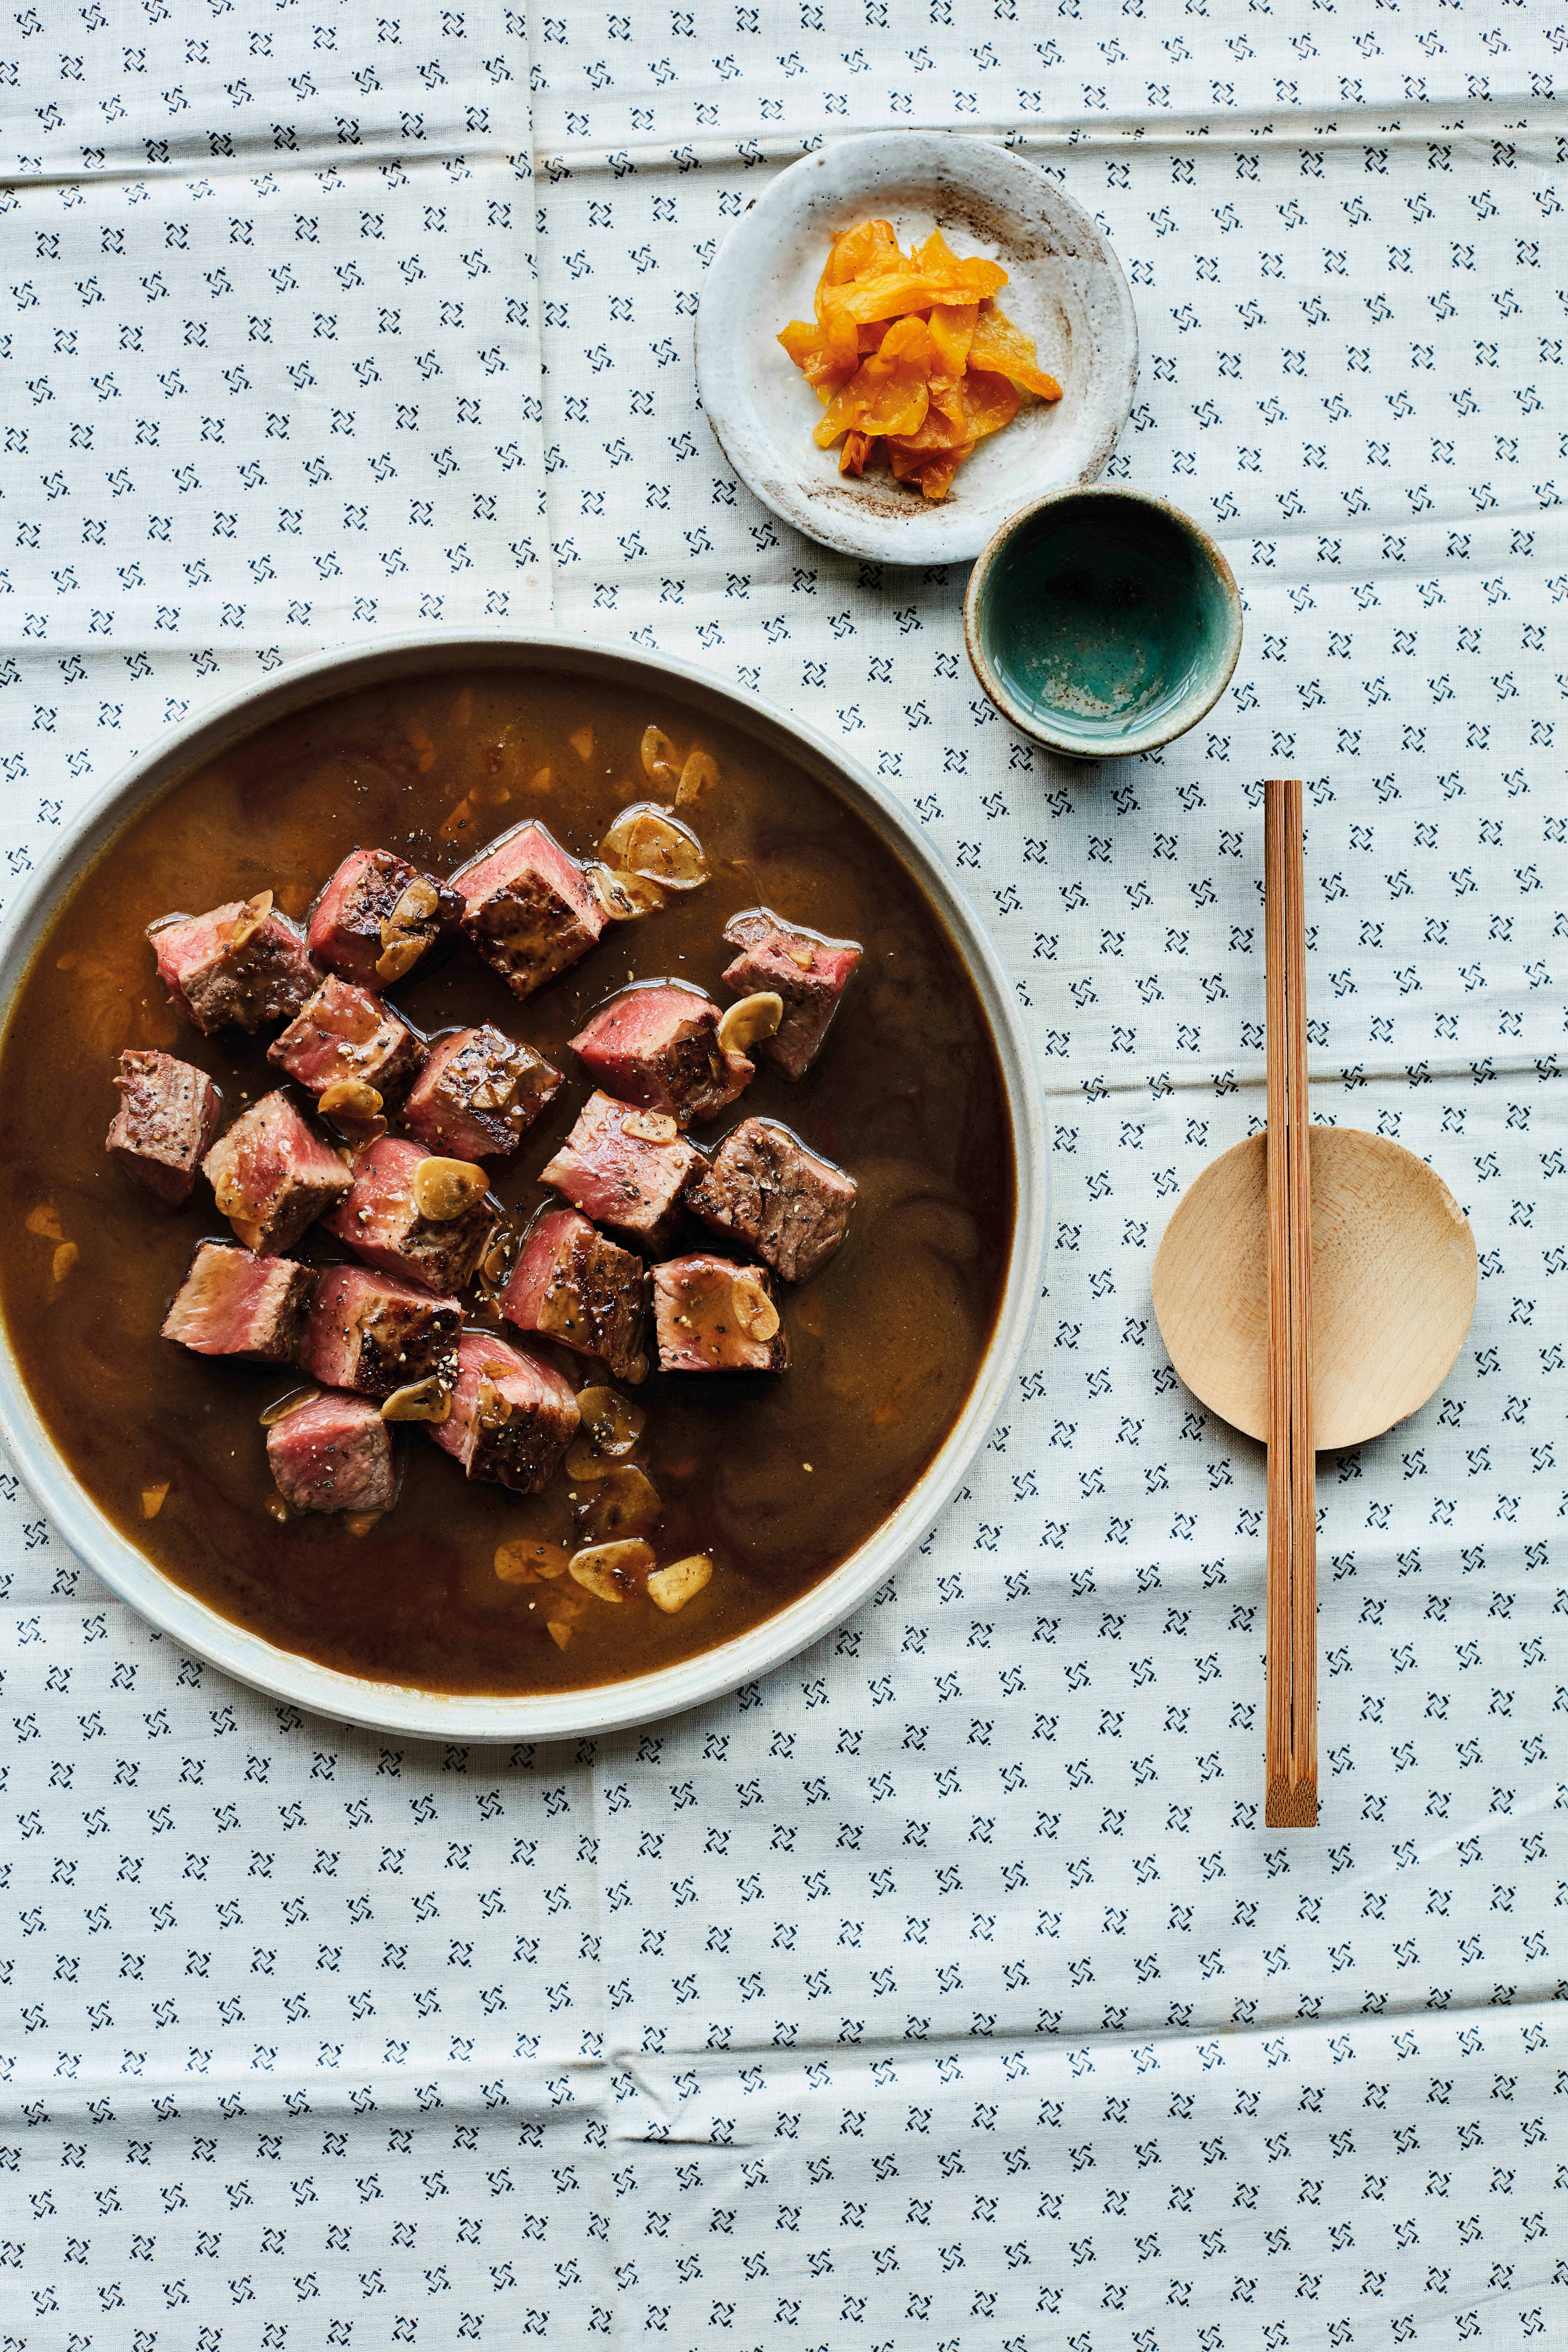 Peper steak met knofook-sojasaus biefstuk uit Japanse kookboek Izakaya van Tim Anderson